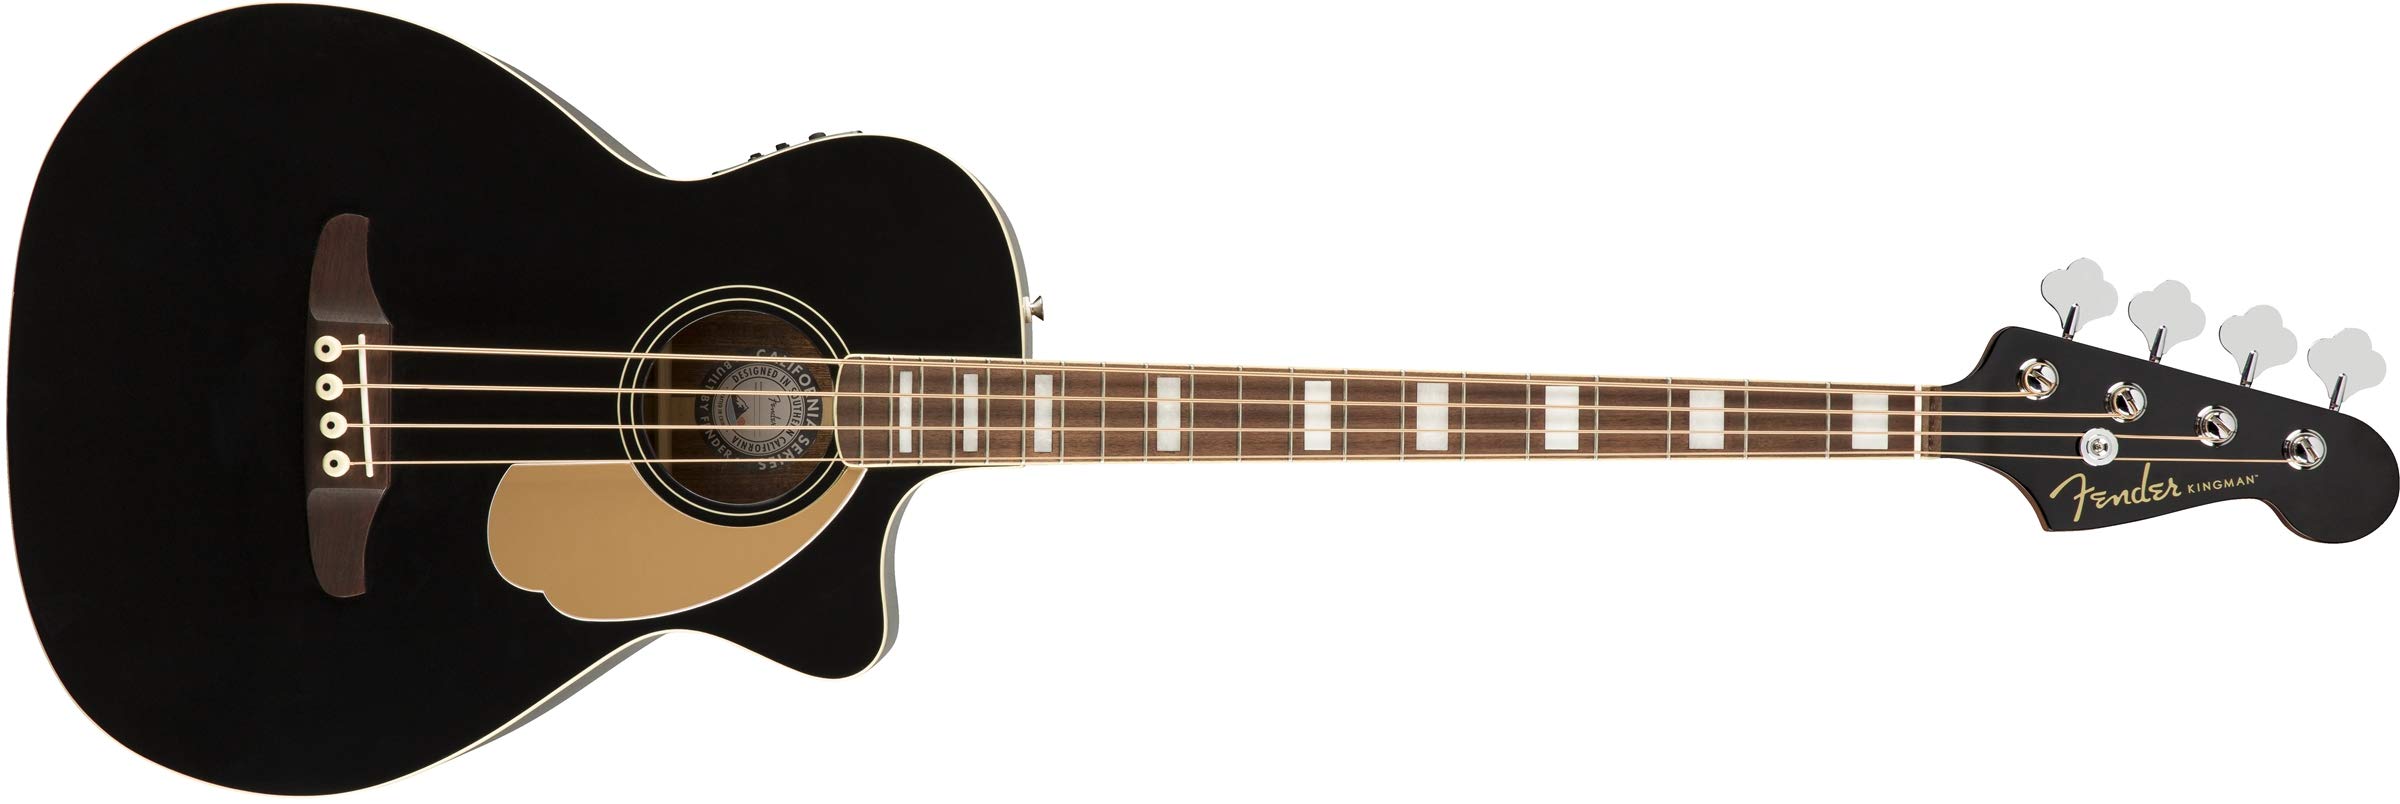 Fender جيتار اكوستيك باس من كينجمان (V2) - أسود - مع حق...